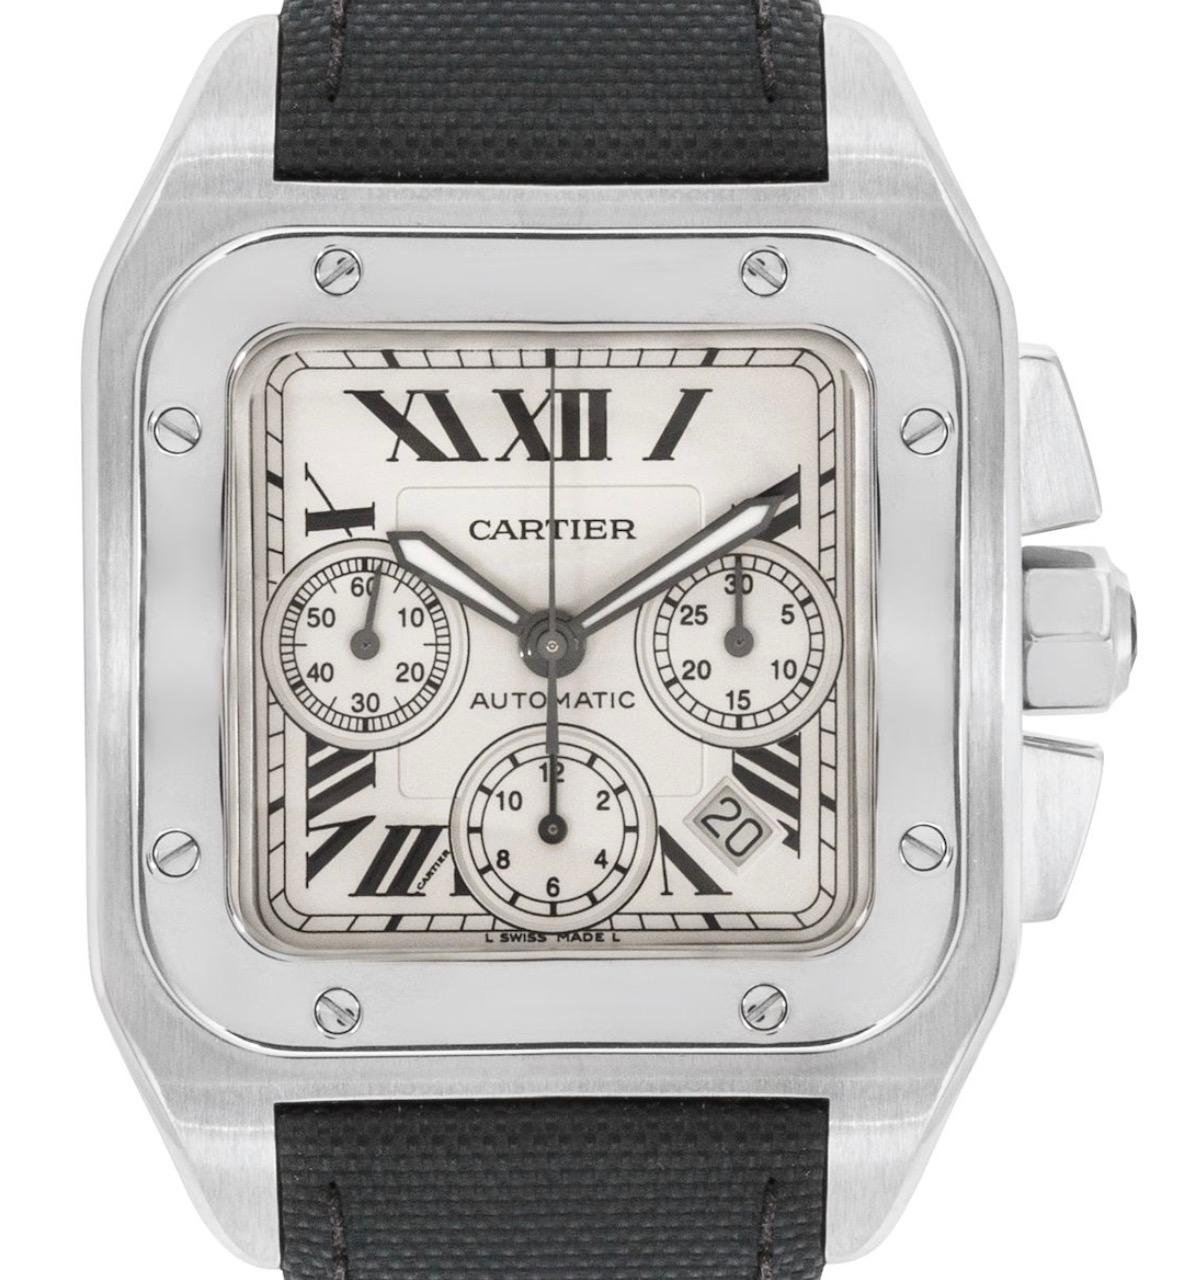 Une montre-bracelet Santos 100 XL en acier inoxydable. Elle présente un cadran argenté avec des chiffres romains, un guichet de date, trois compteurs de chronographe et une lunette en acier inoxydable à 8 vis. Équipé d'un bracelet en cuir noir